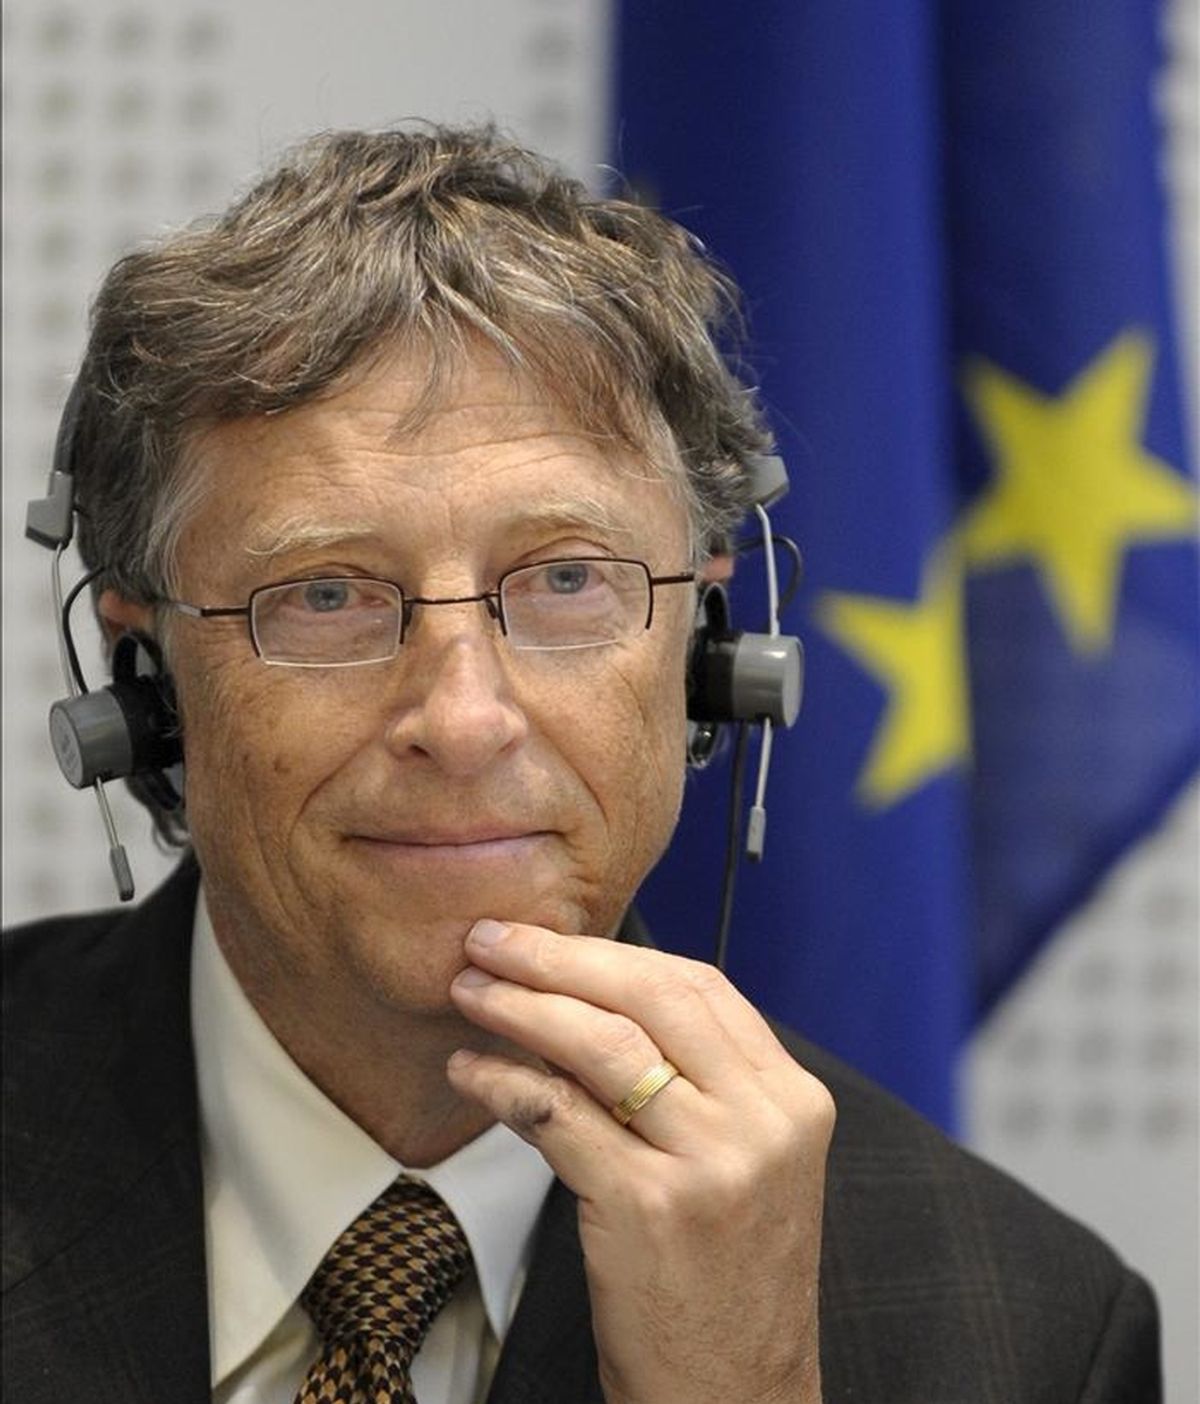 El cofundador de Microsoft y filántropo Bill Gates asiste a la sesión plenaria del Parlamento Europeo, donde presentó la campaña "Living Proof" sobre el impacto positivo de las inversiones en desarrollo, en Estrasburgo (Francia). EFE